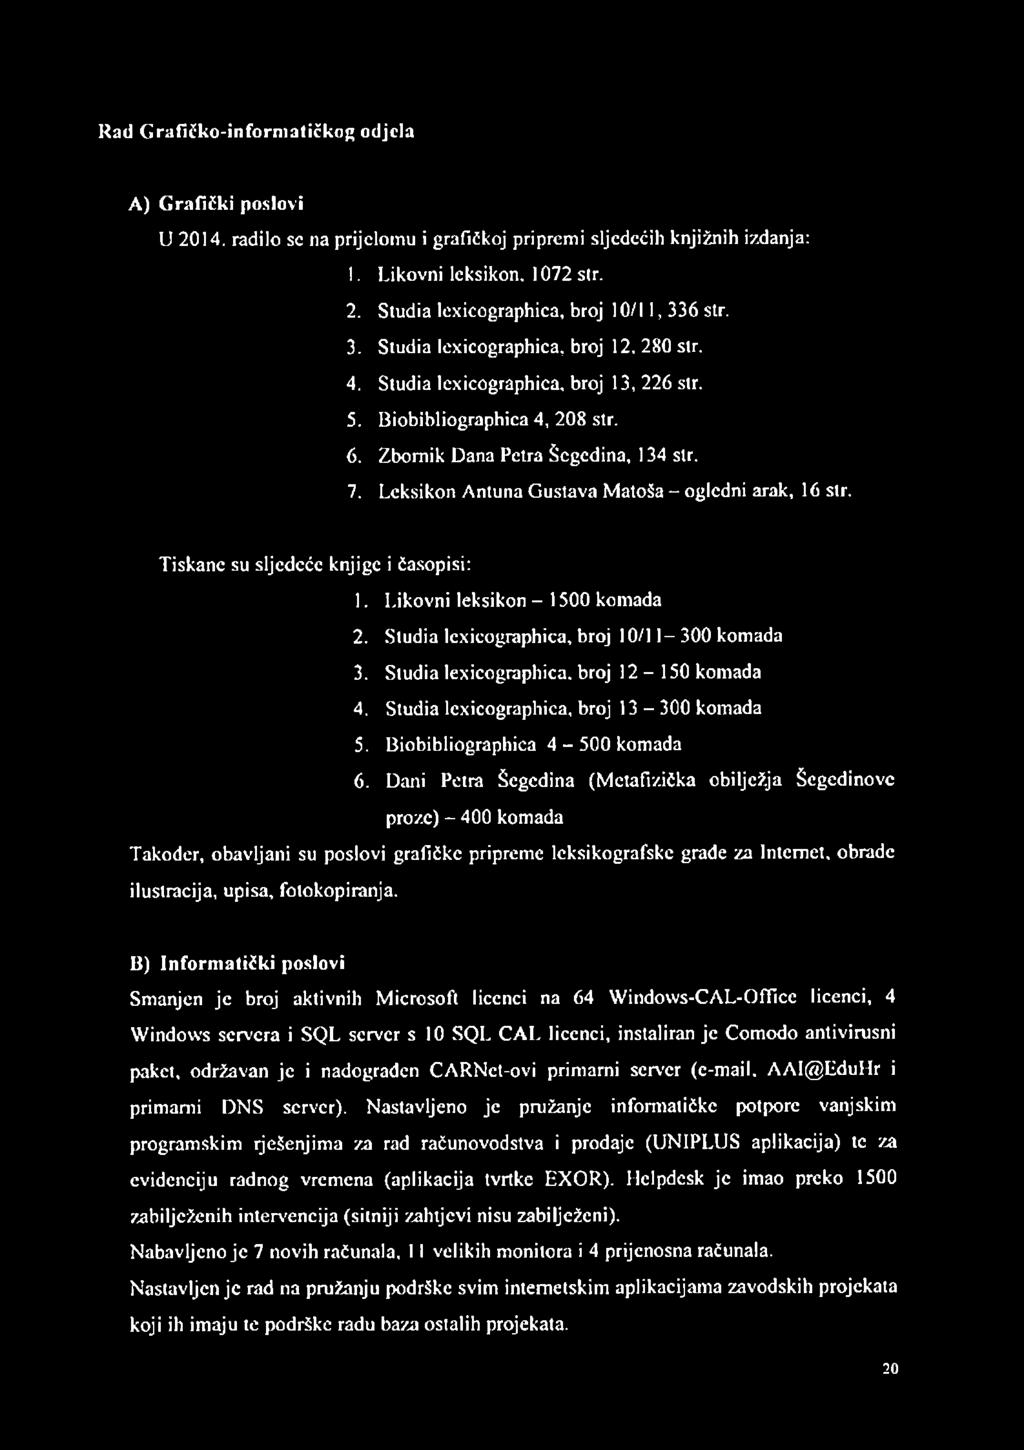 Leksikon A ntuna G ustava M atoša - ogledni arak, 16 str. Tiskane su sljedeće knjige i časopisi: 1. Likovni leksikon - 1500 kom ada 2. Studia lexicographica, broj 10/11-300 komada 3.